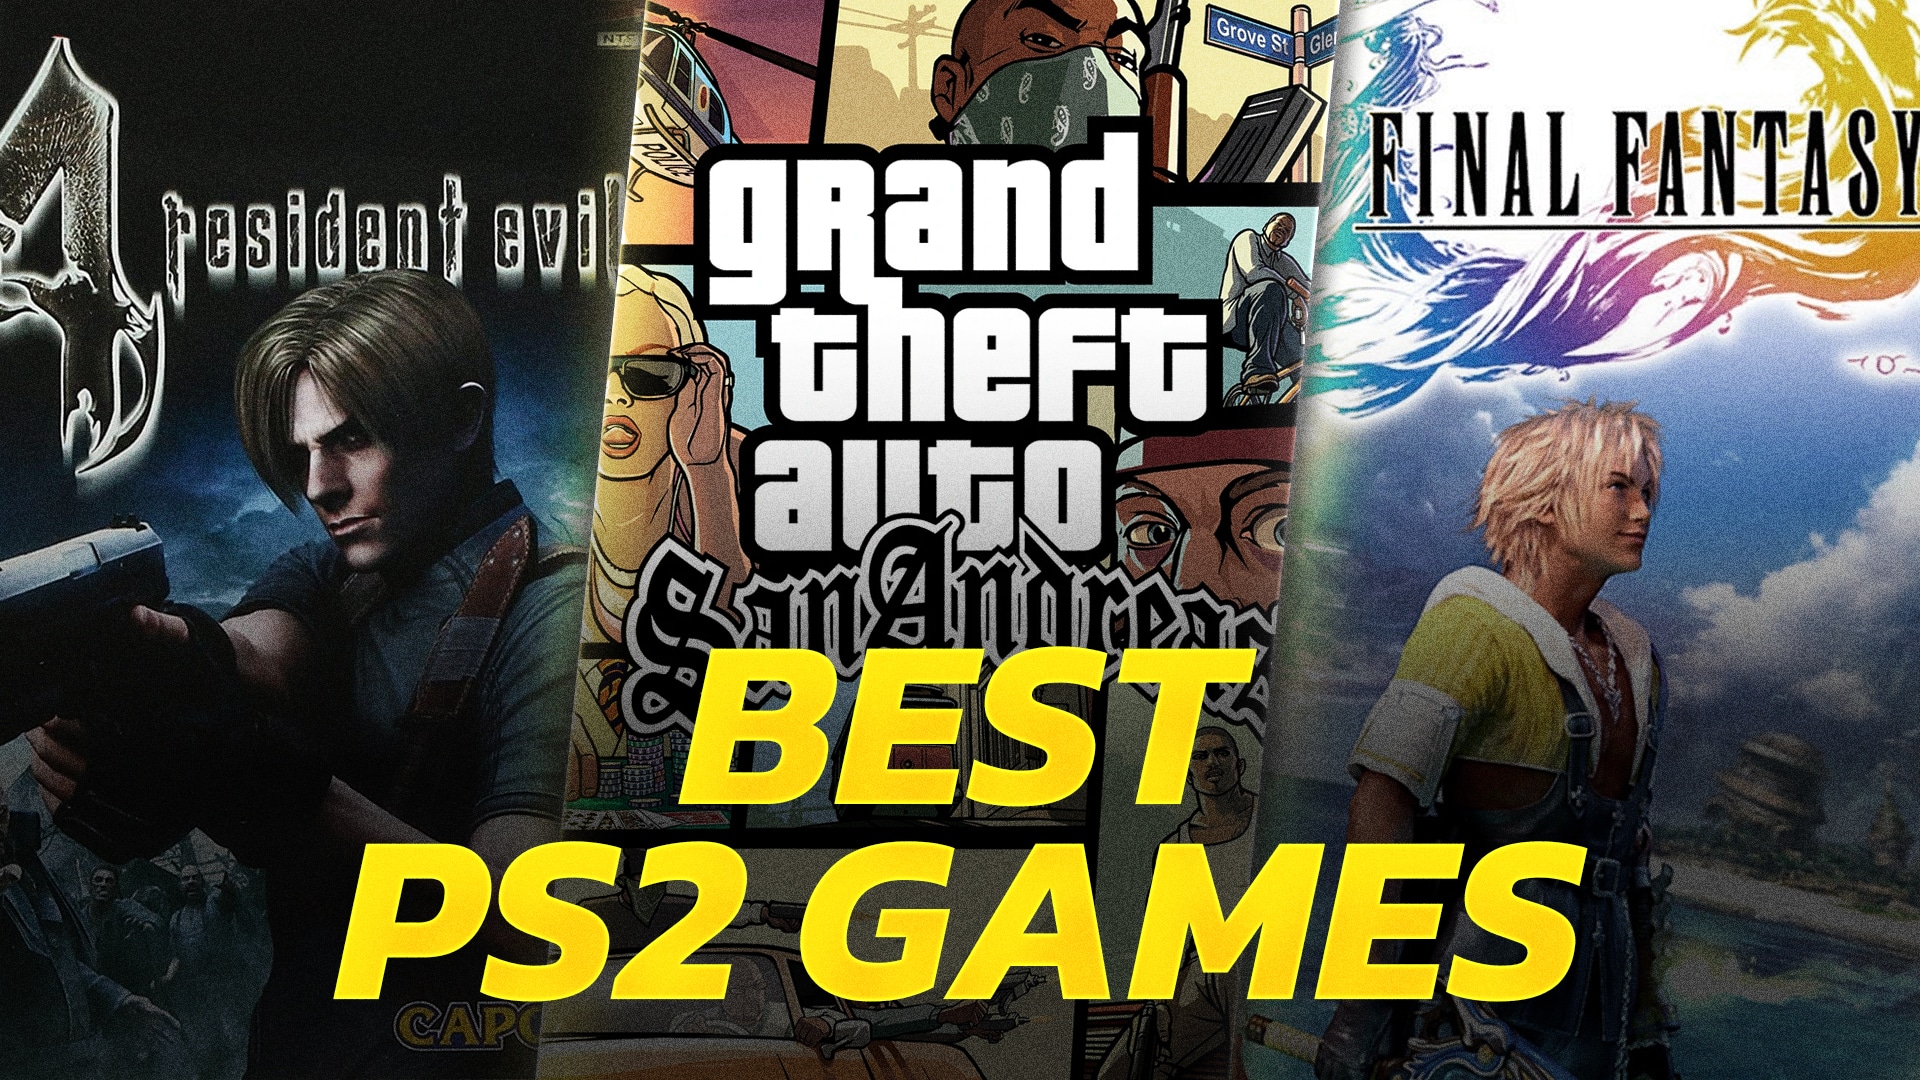 at tilbagetrække arrestordre Måned Best PlayStation 2 games of all time: Top 15 PS2 games ranked - Dexerto